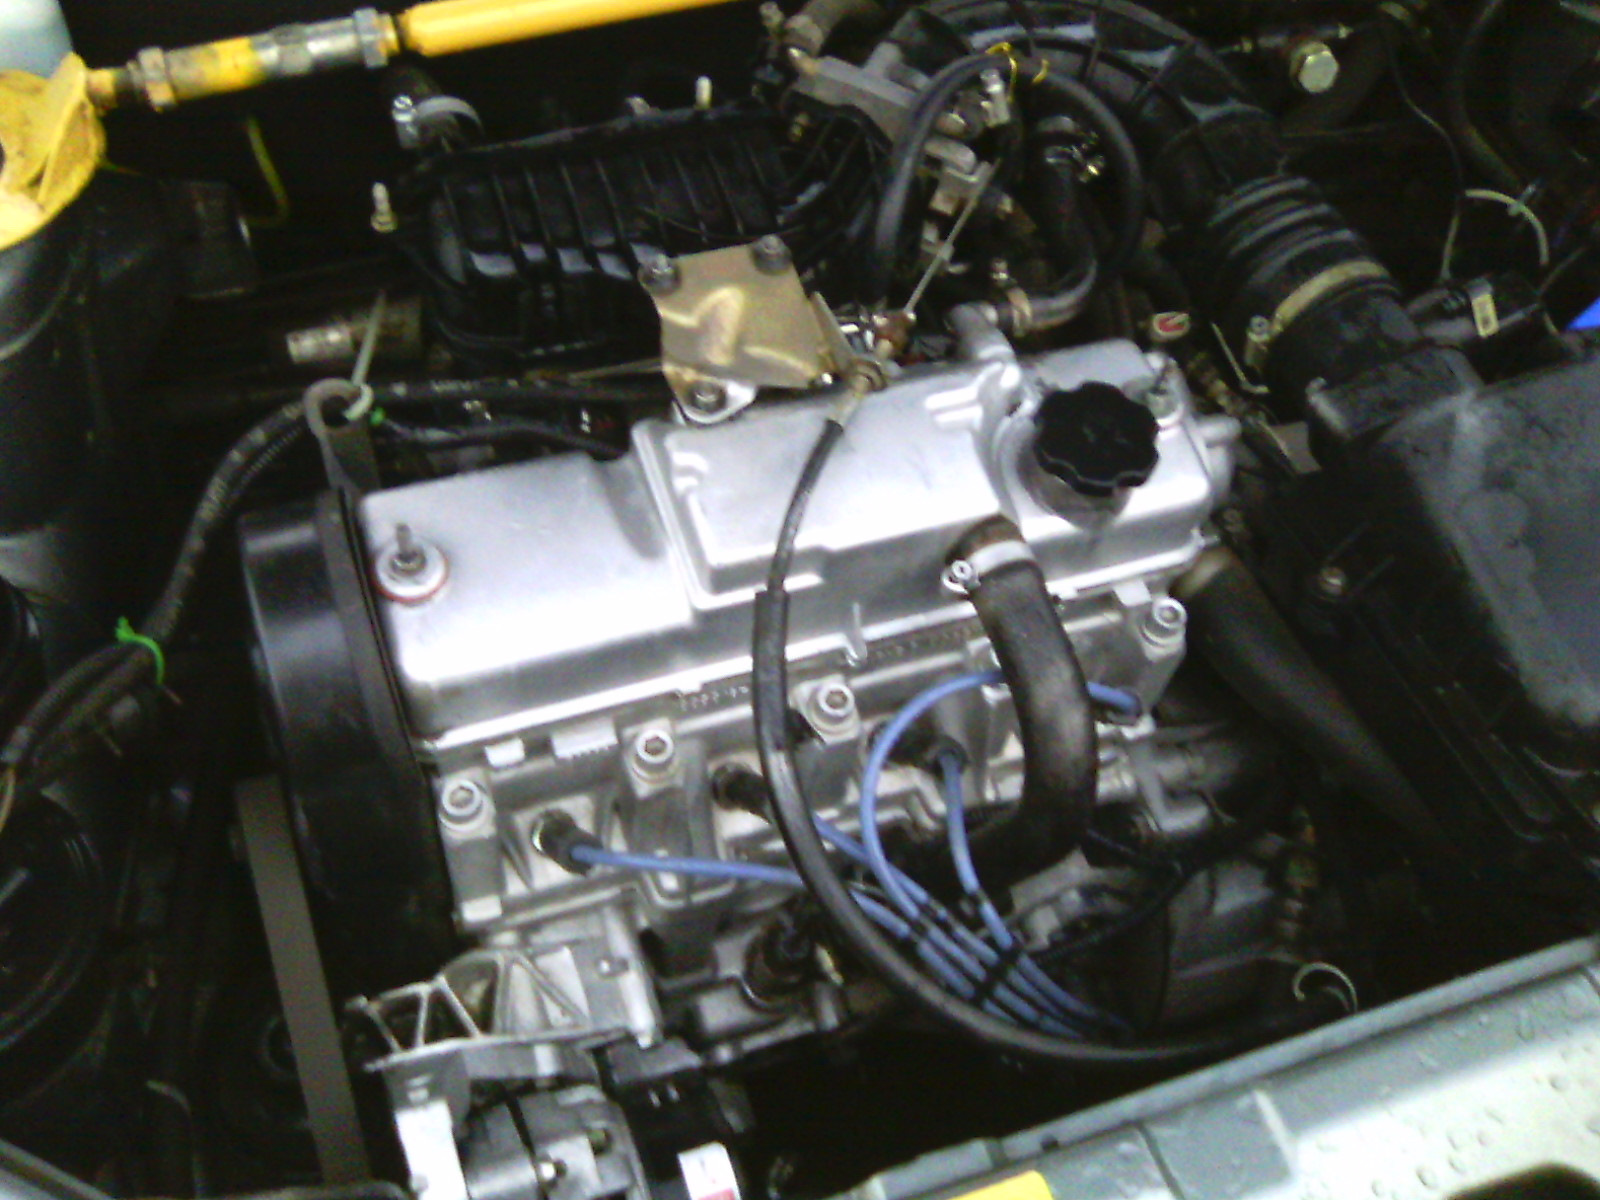 Ваз 2110 8 клапанов ремонт. ВАЗ 2110 1.6 8 клапанный. ВАЗ 2110 8 клапанный. Мотор 8 клапанный ВАЗ 2110. Движок 8 клапанный ВАЗ 2110.